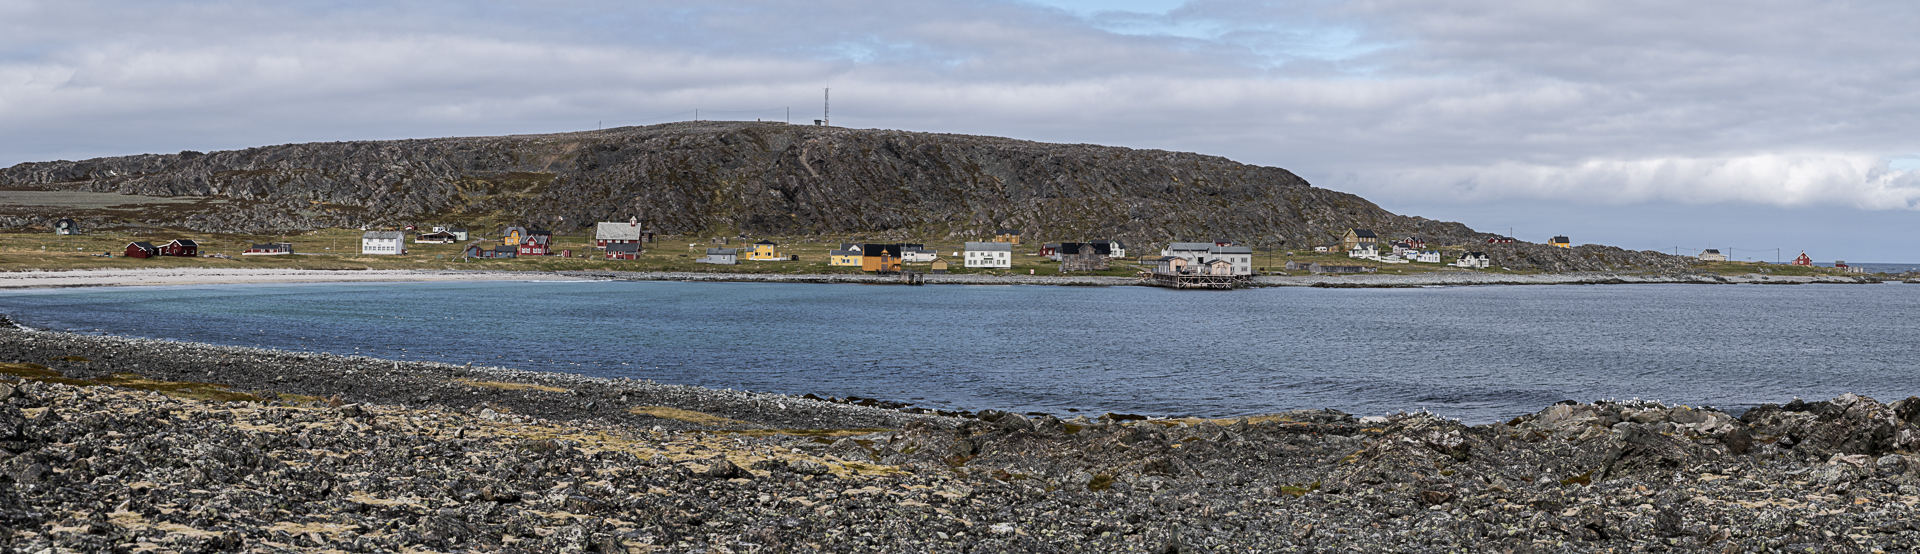 Fiskeværet Hamningberg i Båtsfjord, nordlige ytterpunkt mot Barentshavet på Nasjonal turistveg Varanger.

Foto: Jarle Wæhler, Statens vegvesen